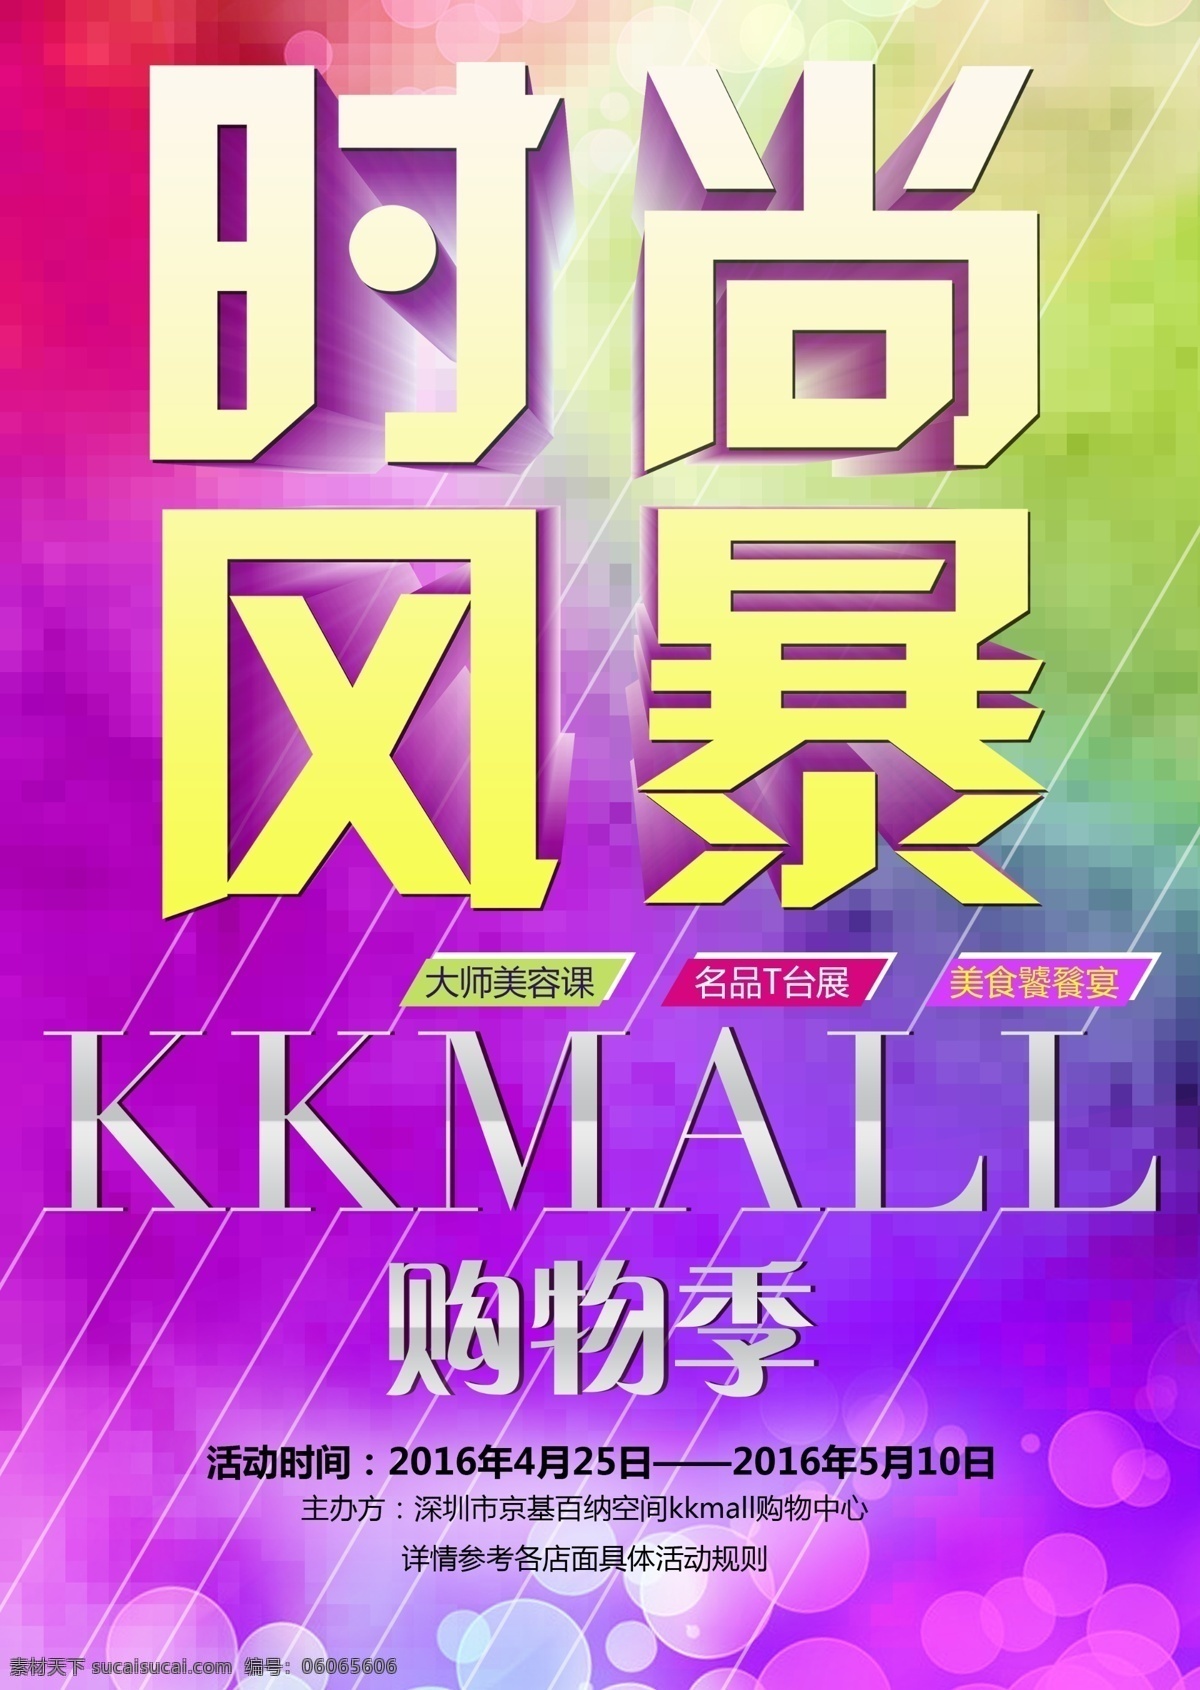 大型商场 kkmall 海报 招贴 原创 紫色